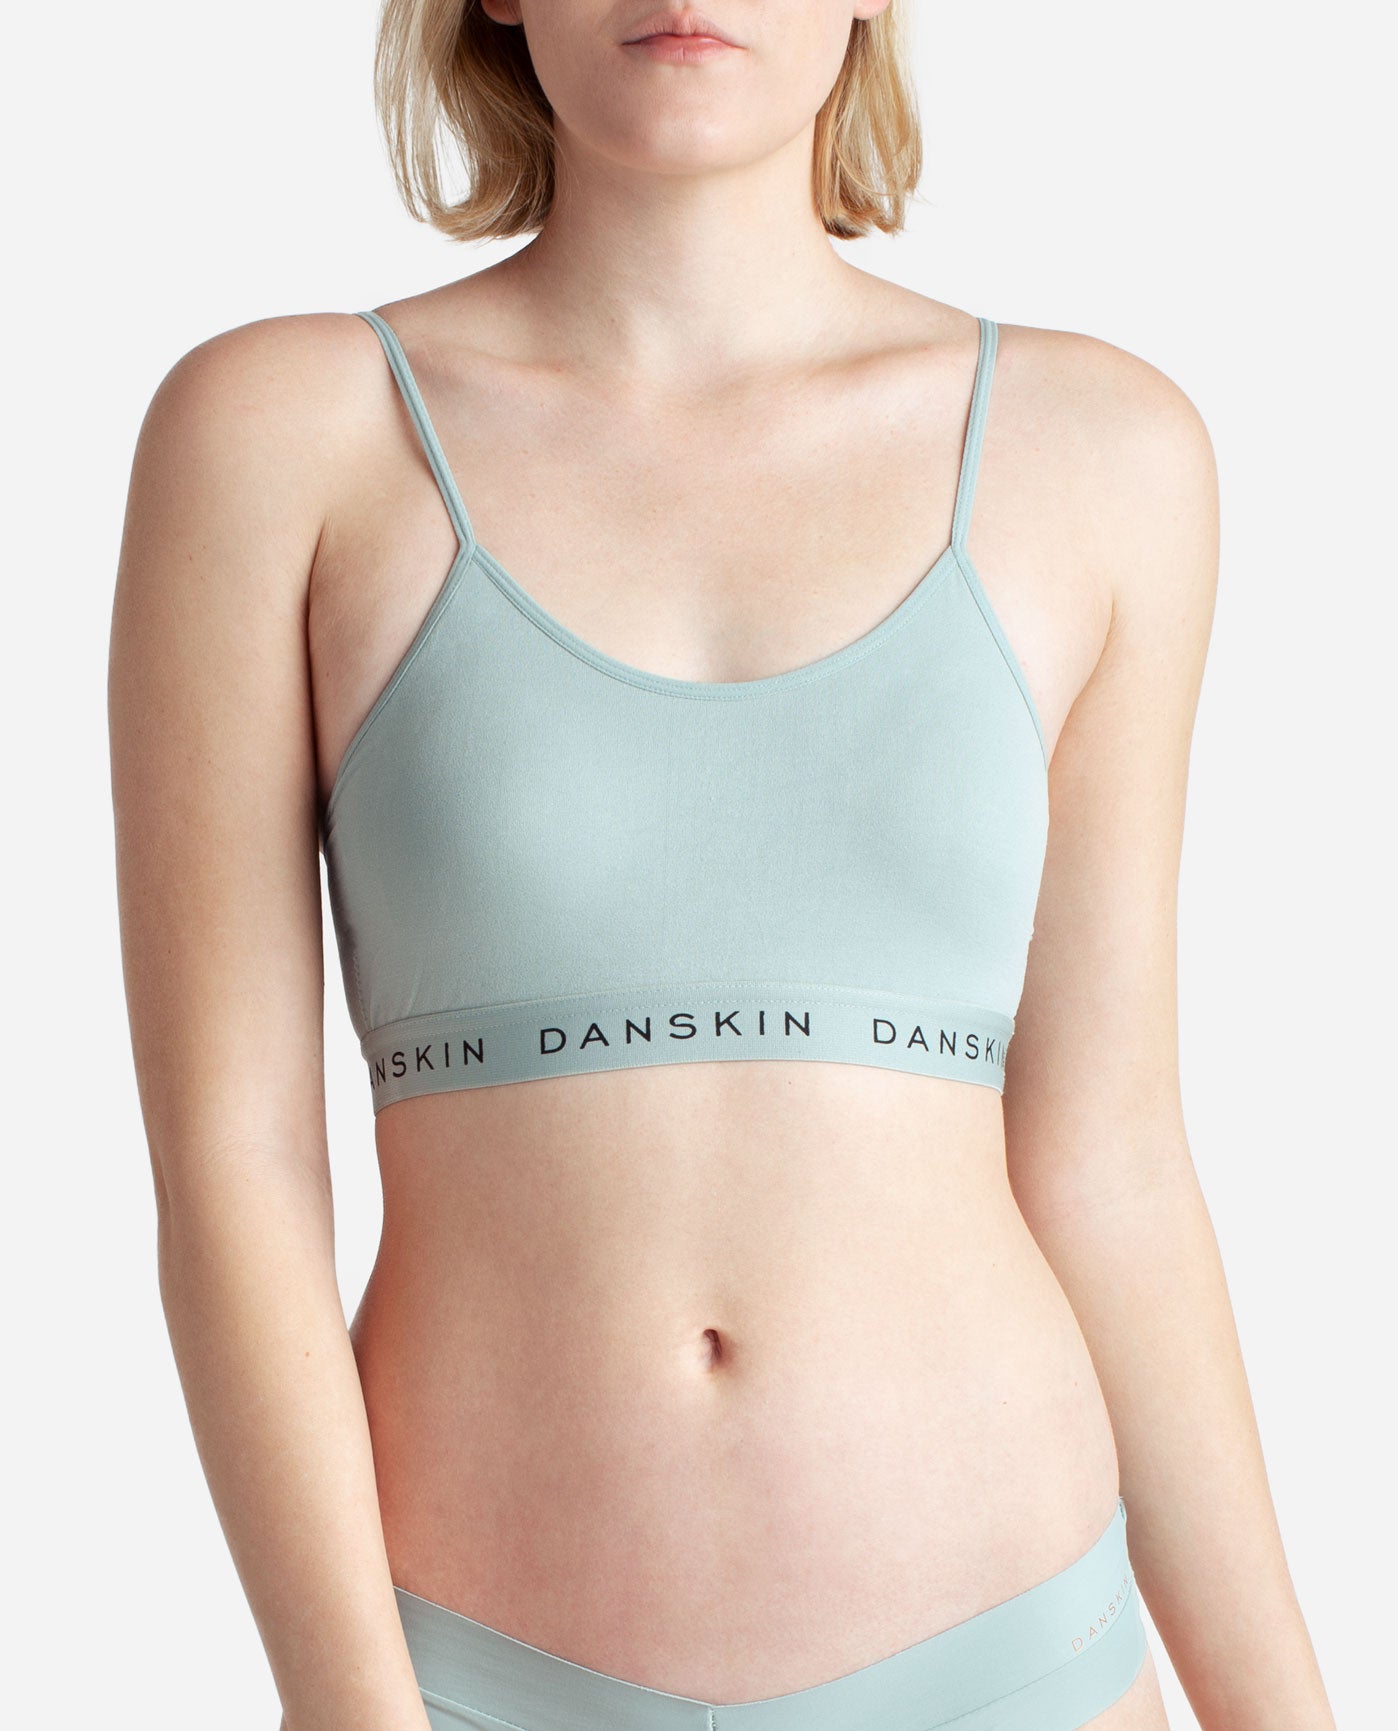 Danskin, Intimates & Sleepwear, Size 36c Danskin Bra